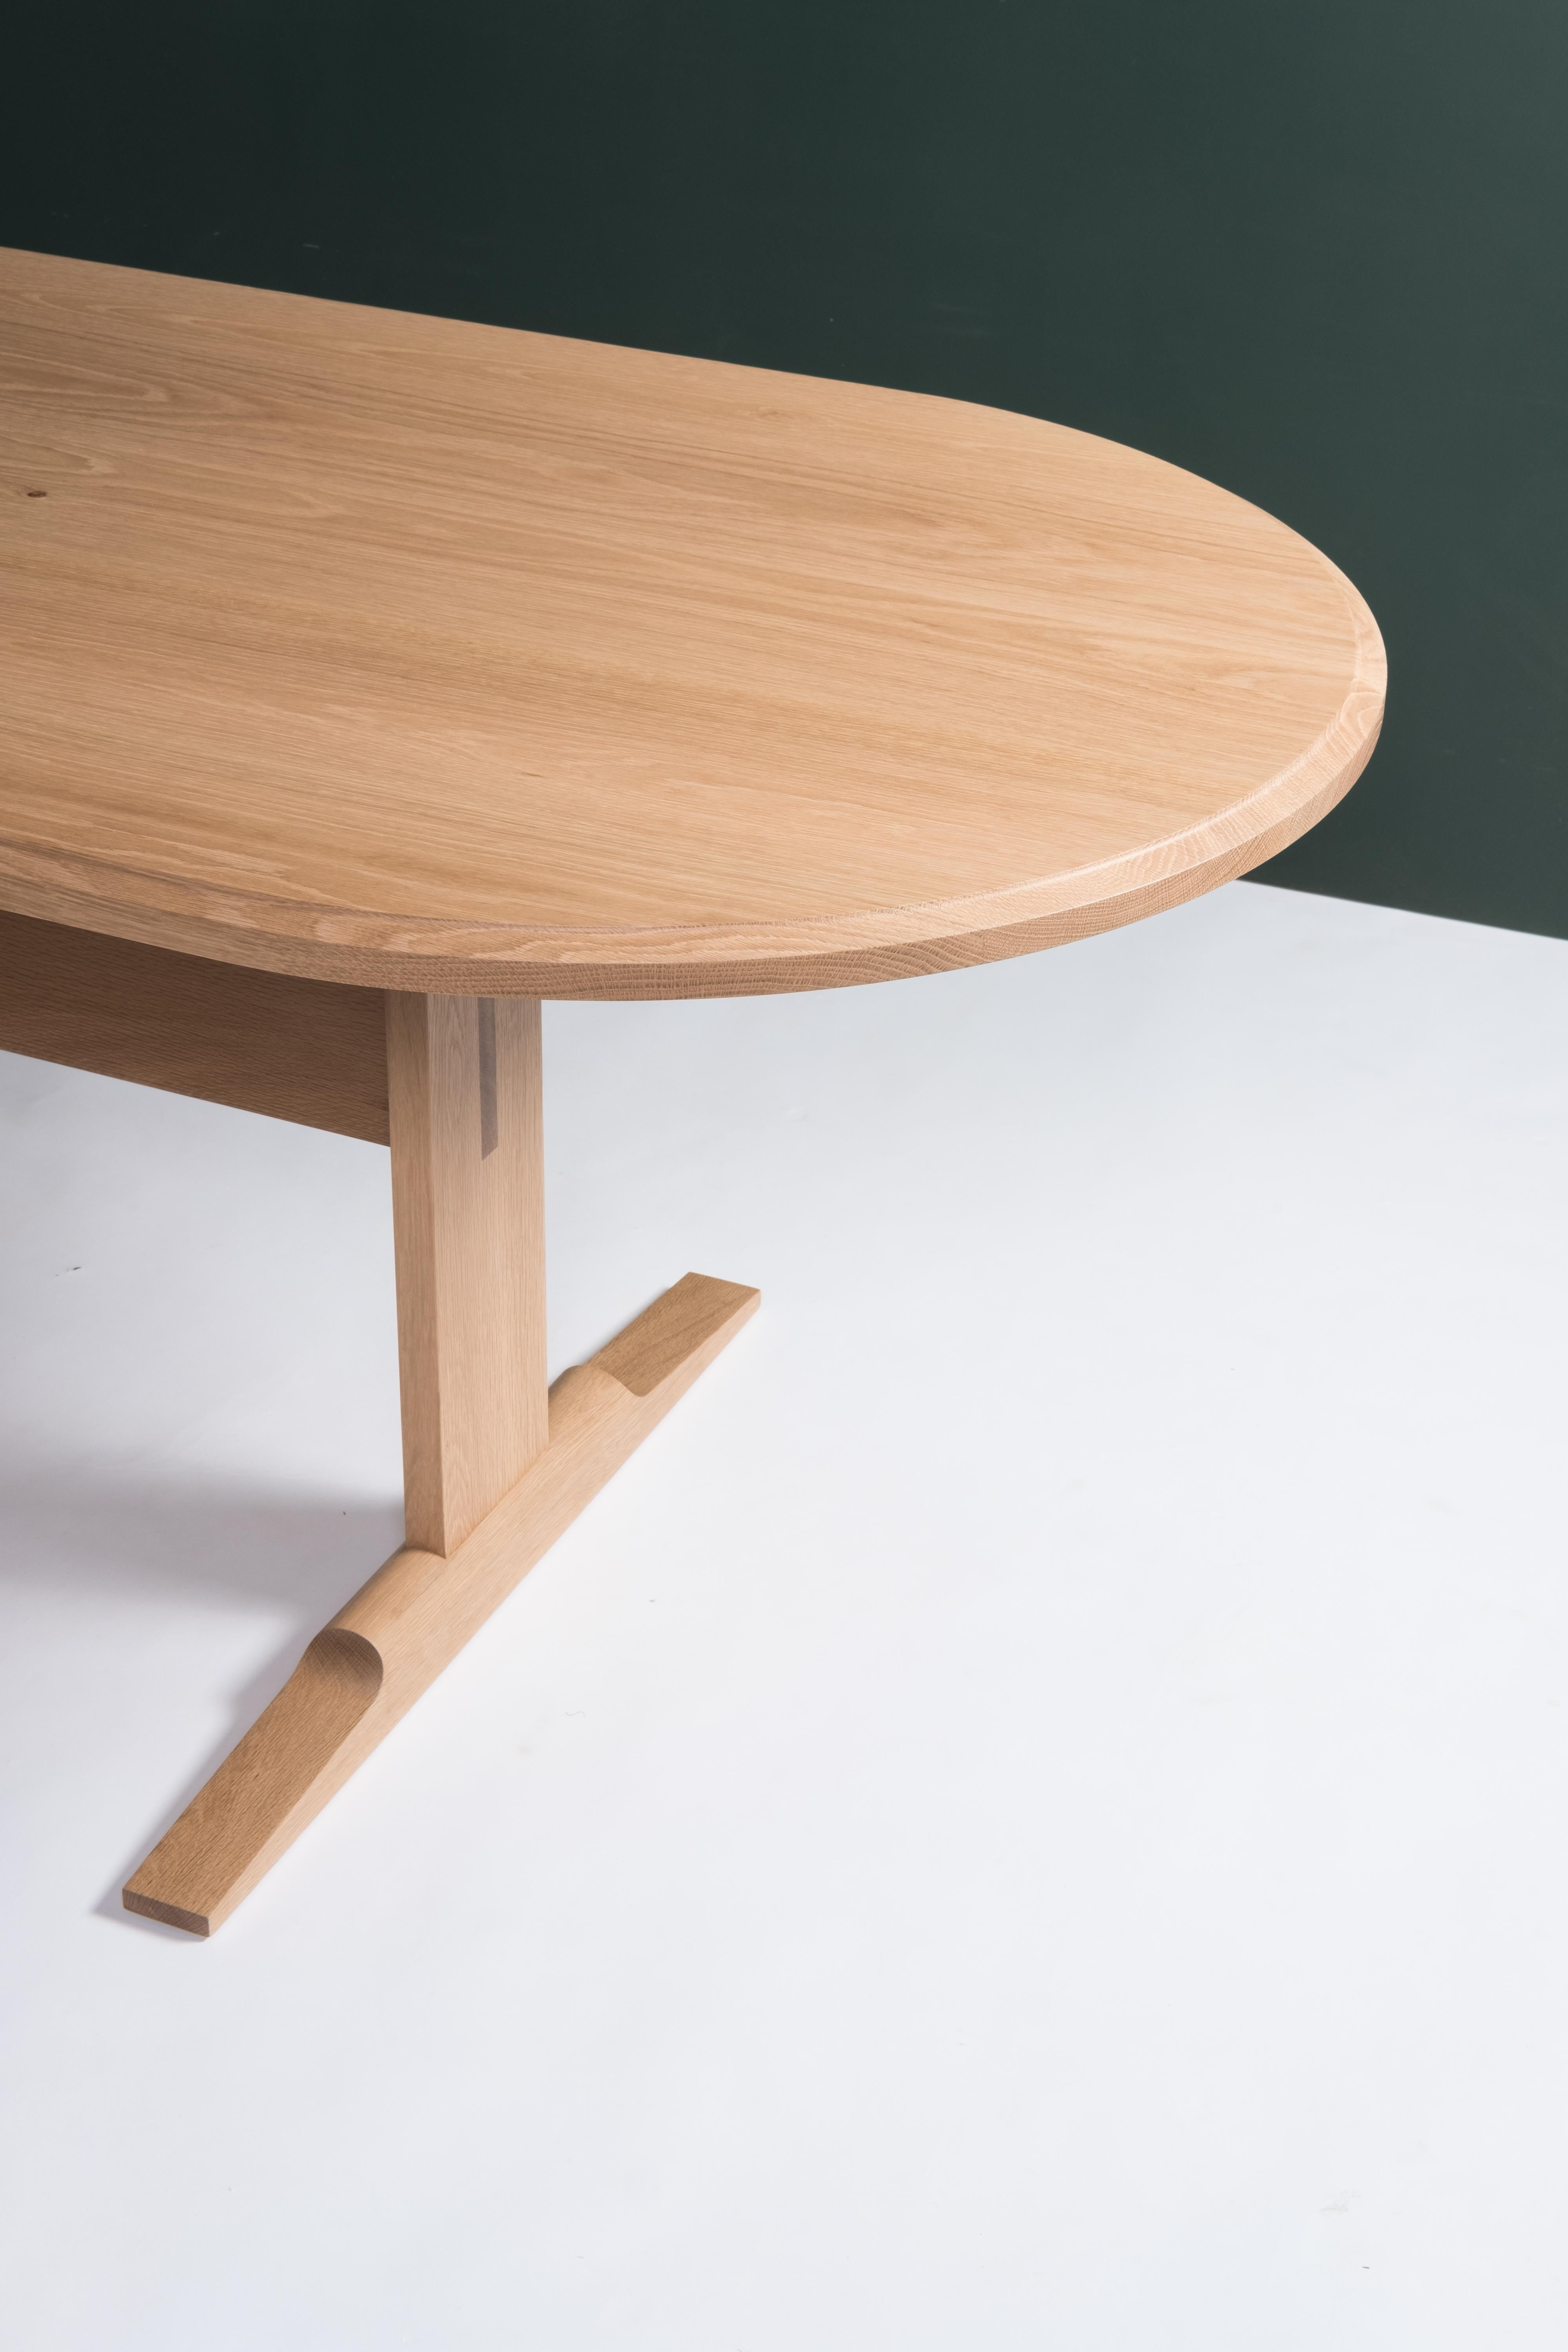 La table de salle à manger Spade est une version moderne de la table à tréteaux classique. La menuiserie en bois massif, combinée à une mise en forme soignée et à des lignes épurées, confère à cette table une apparence gracieuse et une grande